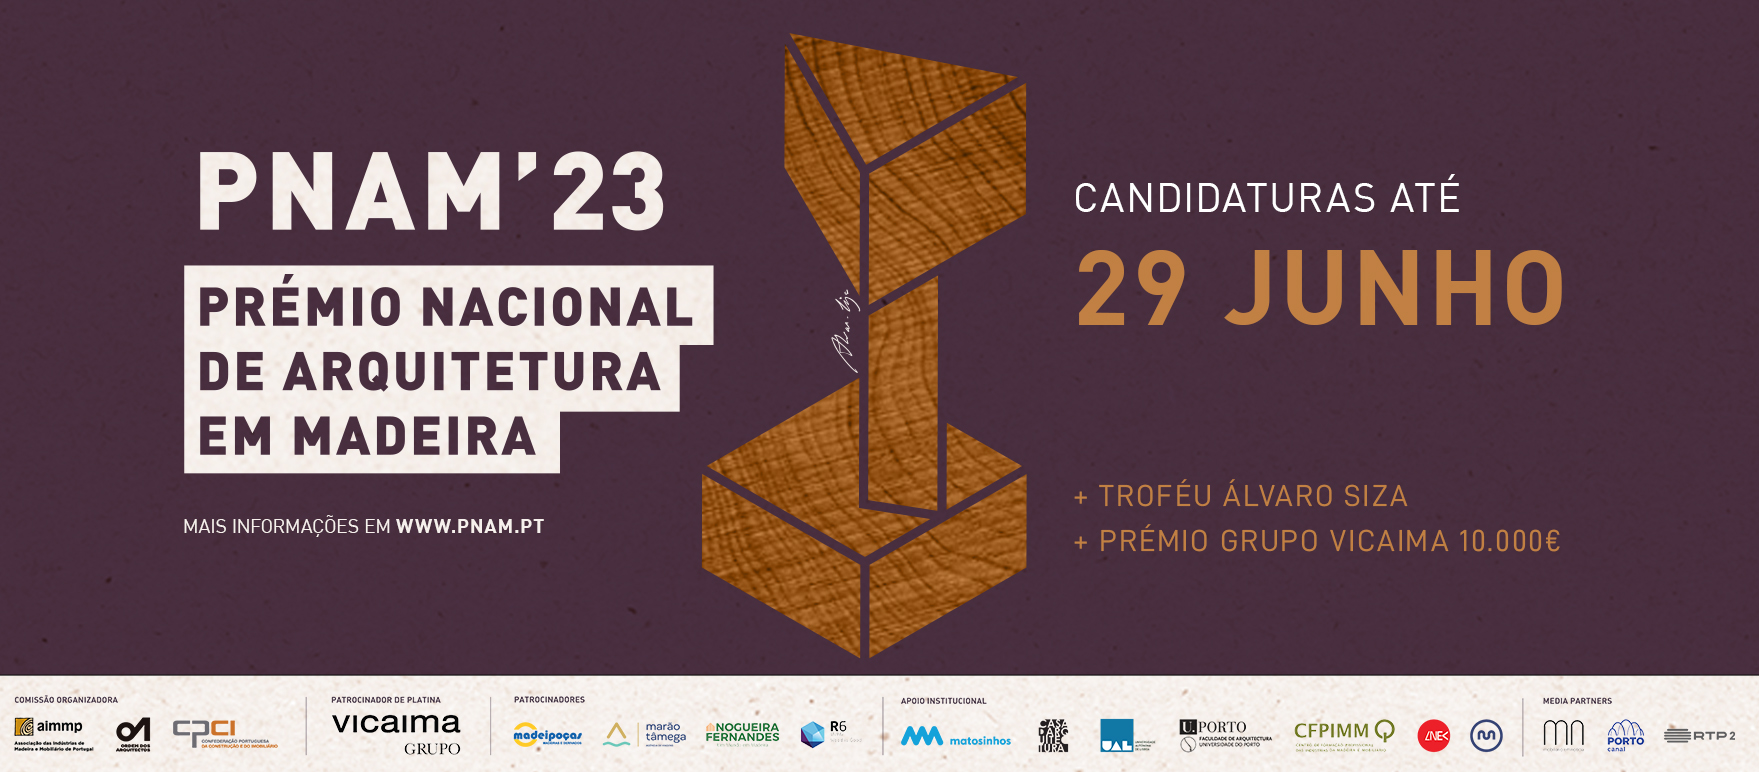 Prémio Nacional de Arquitetura em Madeira: Candidaturas Abertas